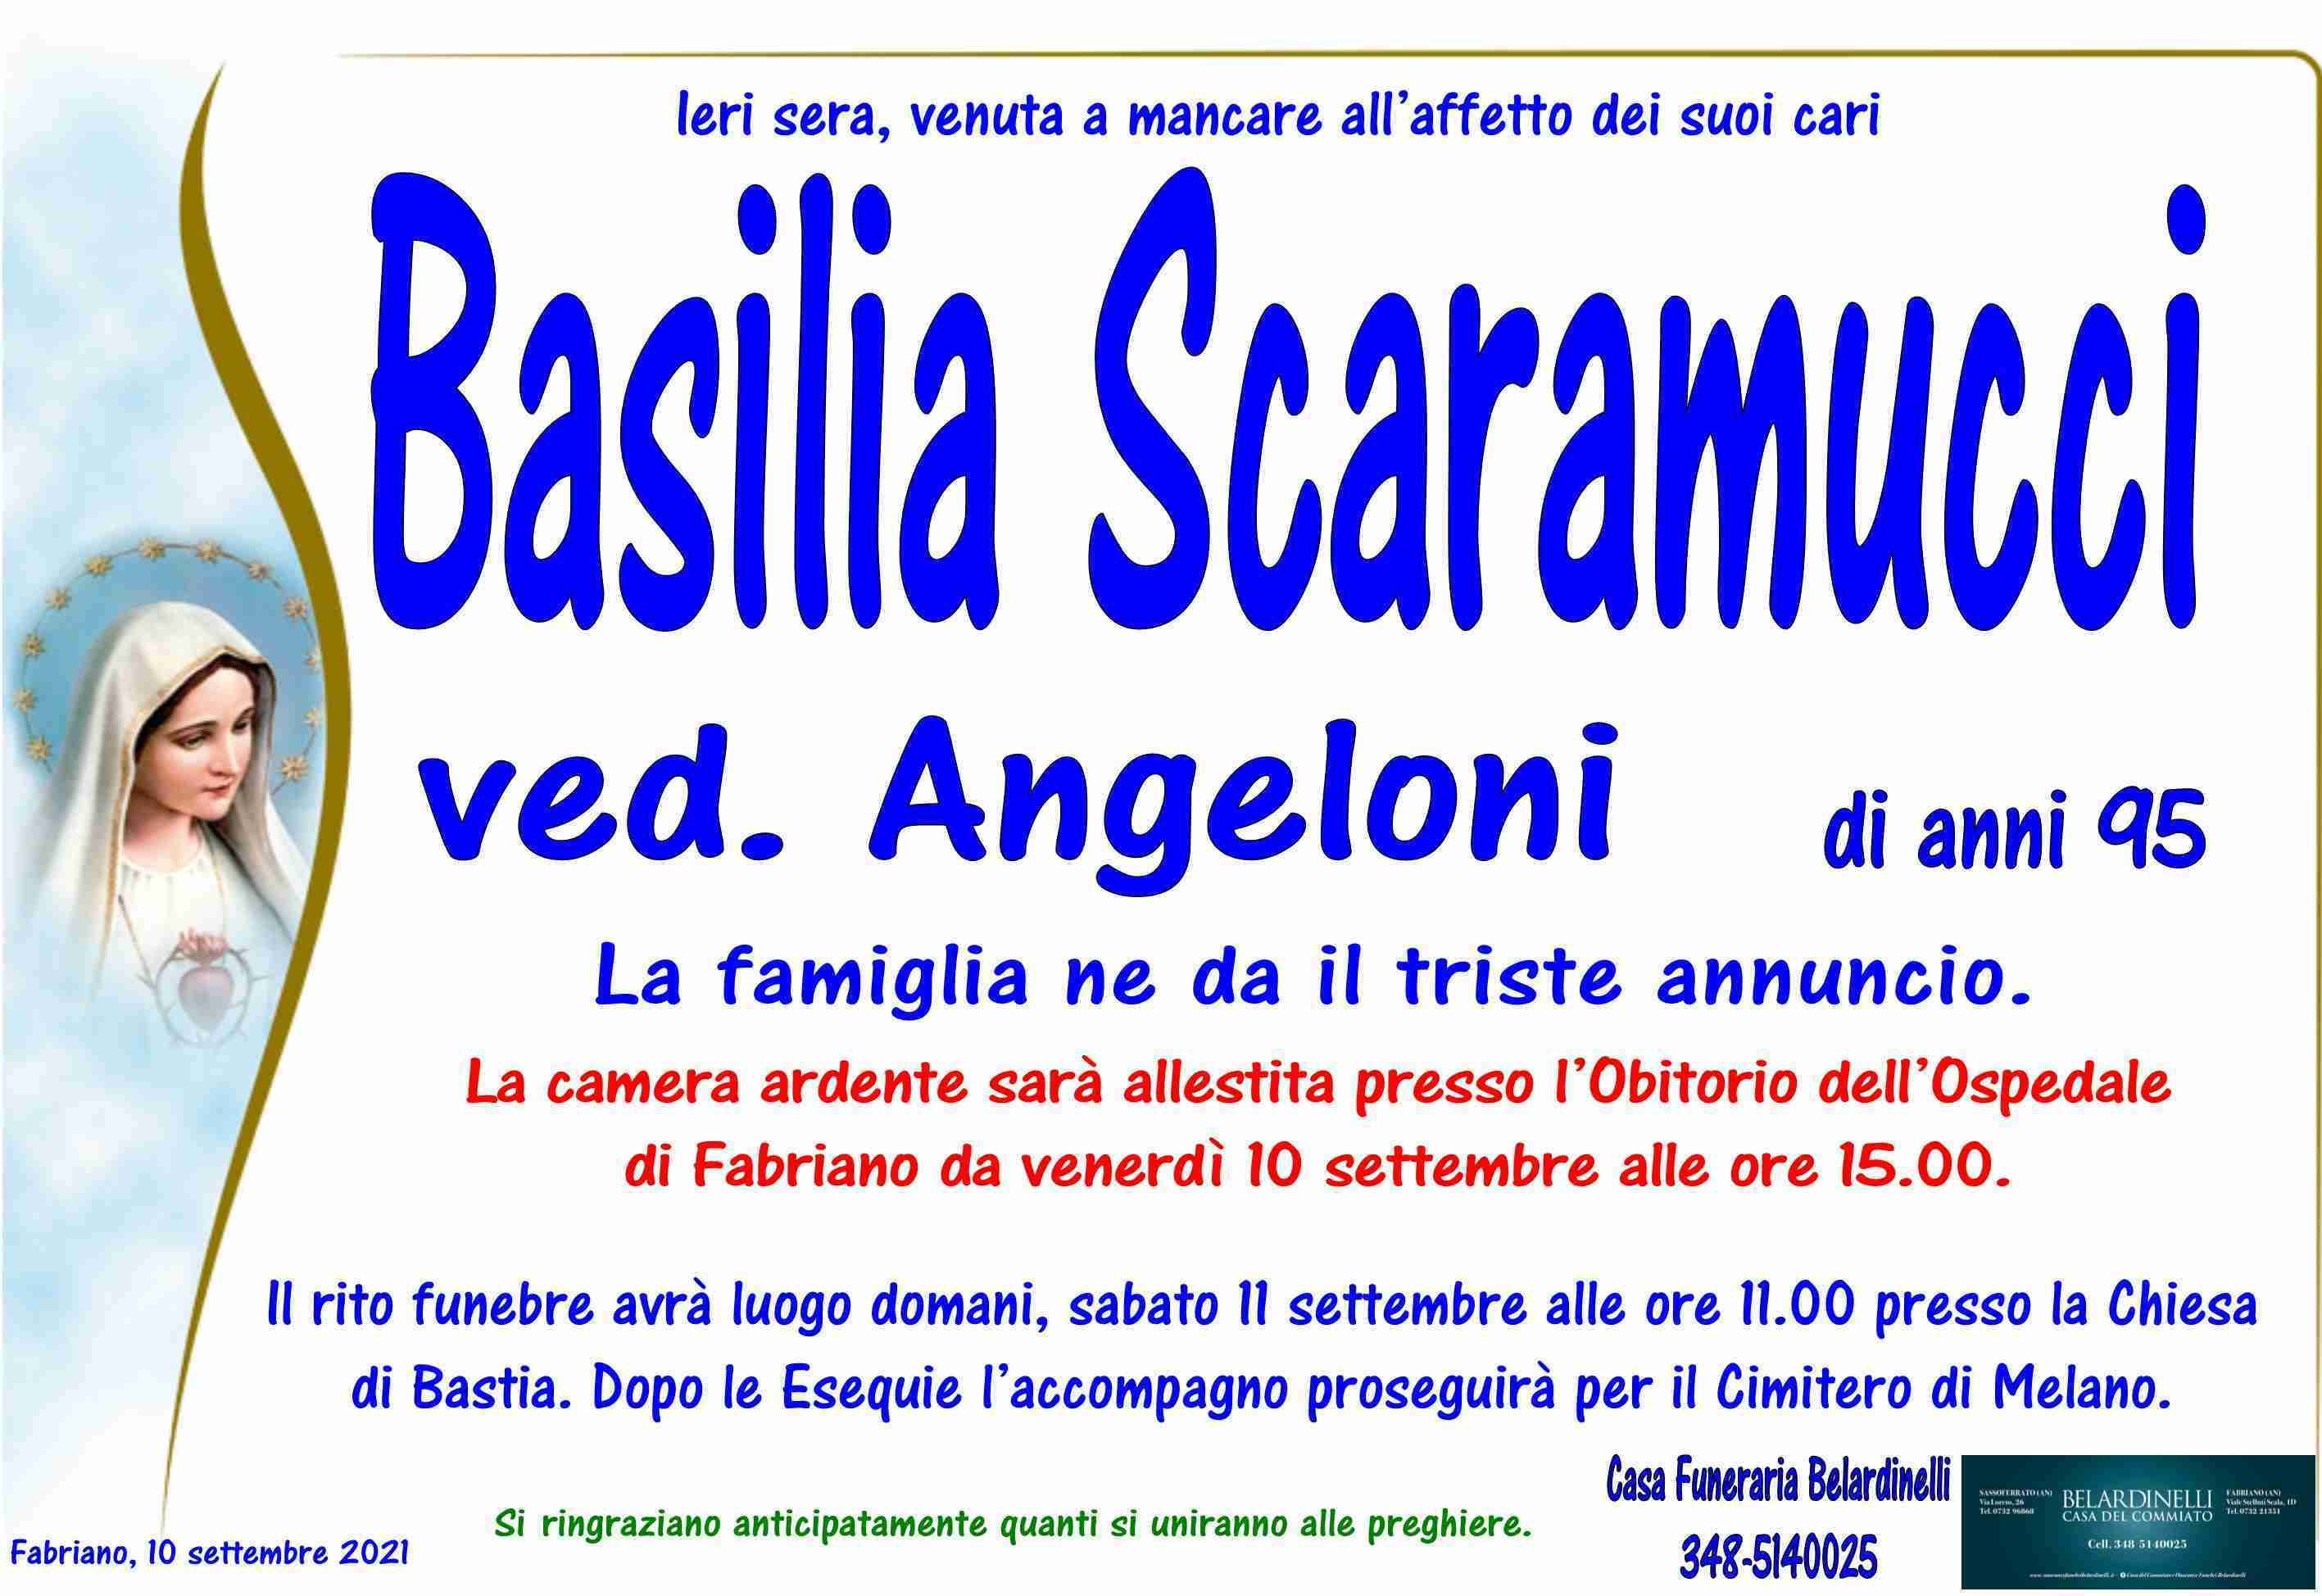 Basilia Scaramucci